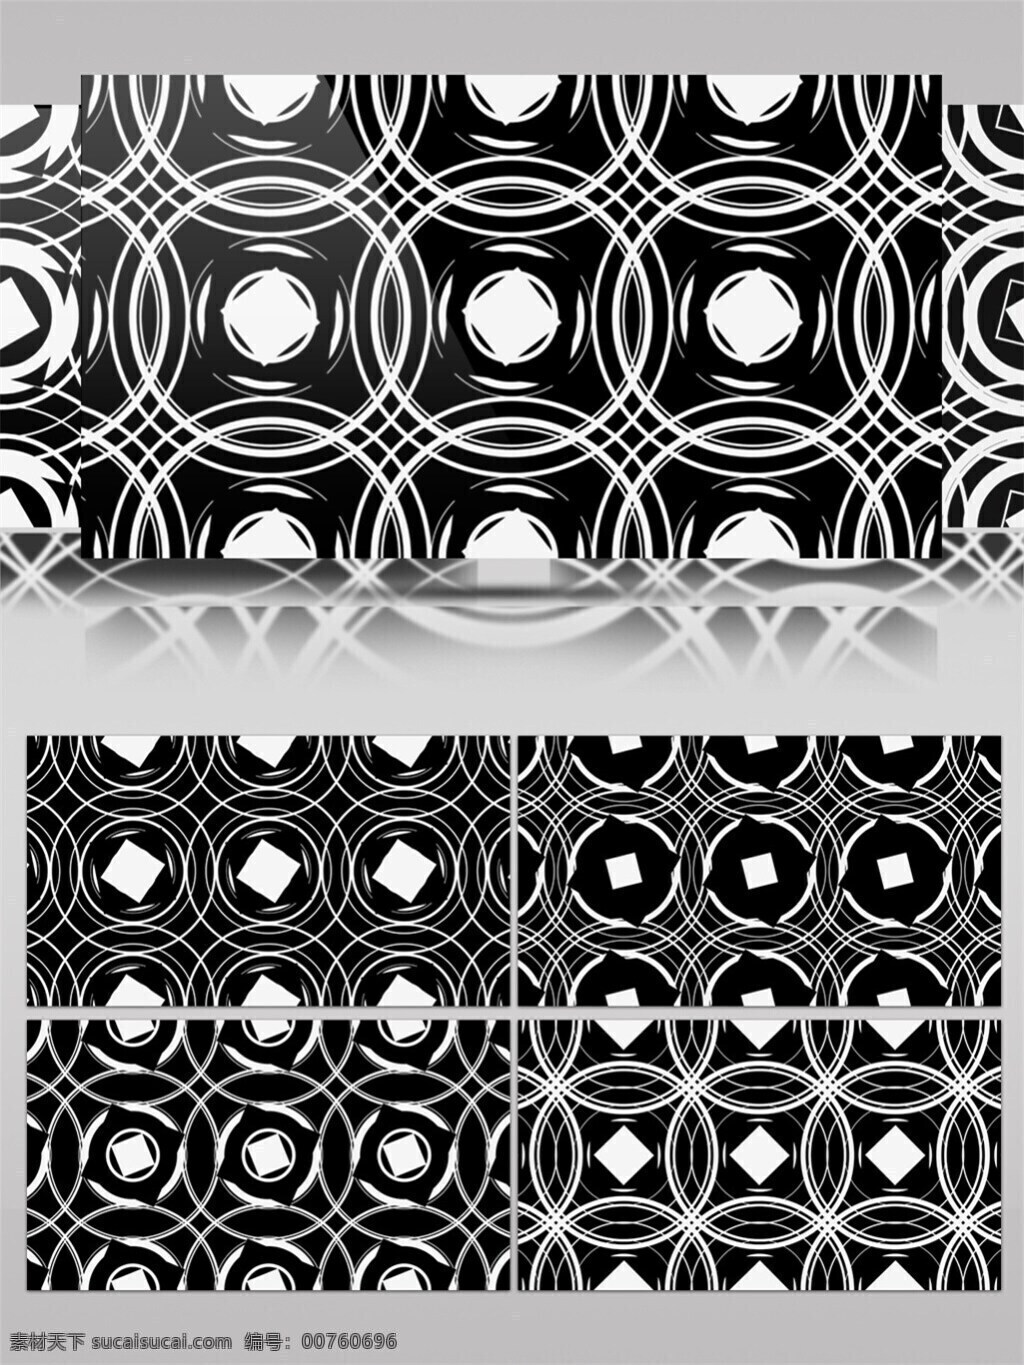 黑白 圆环 壁纸 高清 视频 vj灯光 壁纸图案 动态展示 背景 黑白光点 立体几何 炫酷背景 装饰风格